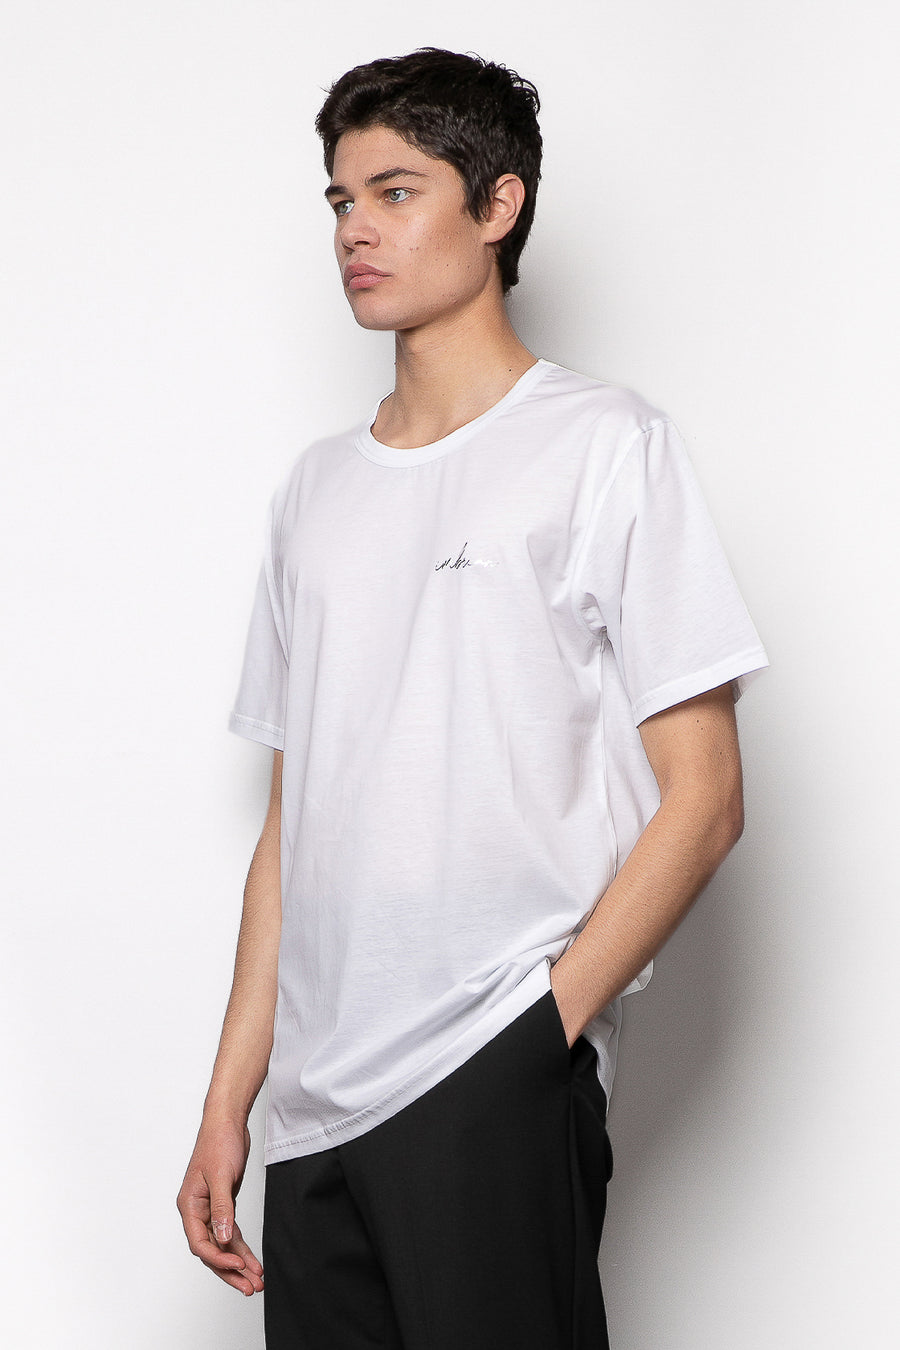 T-shirt in cotone mercerizzato girocollo con logo termoadesivo - Bianco